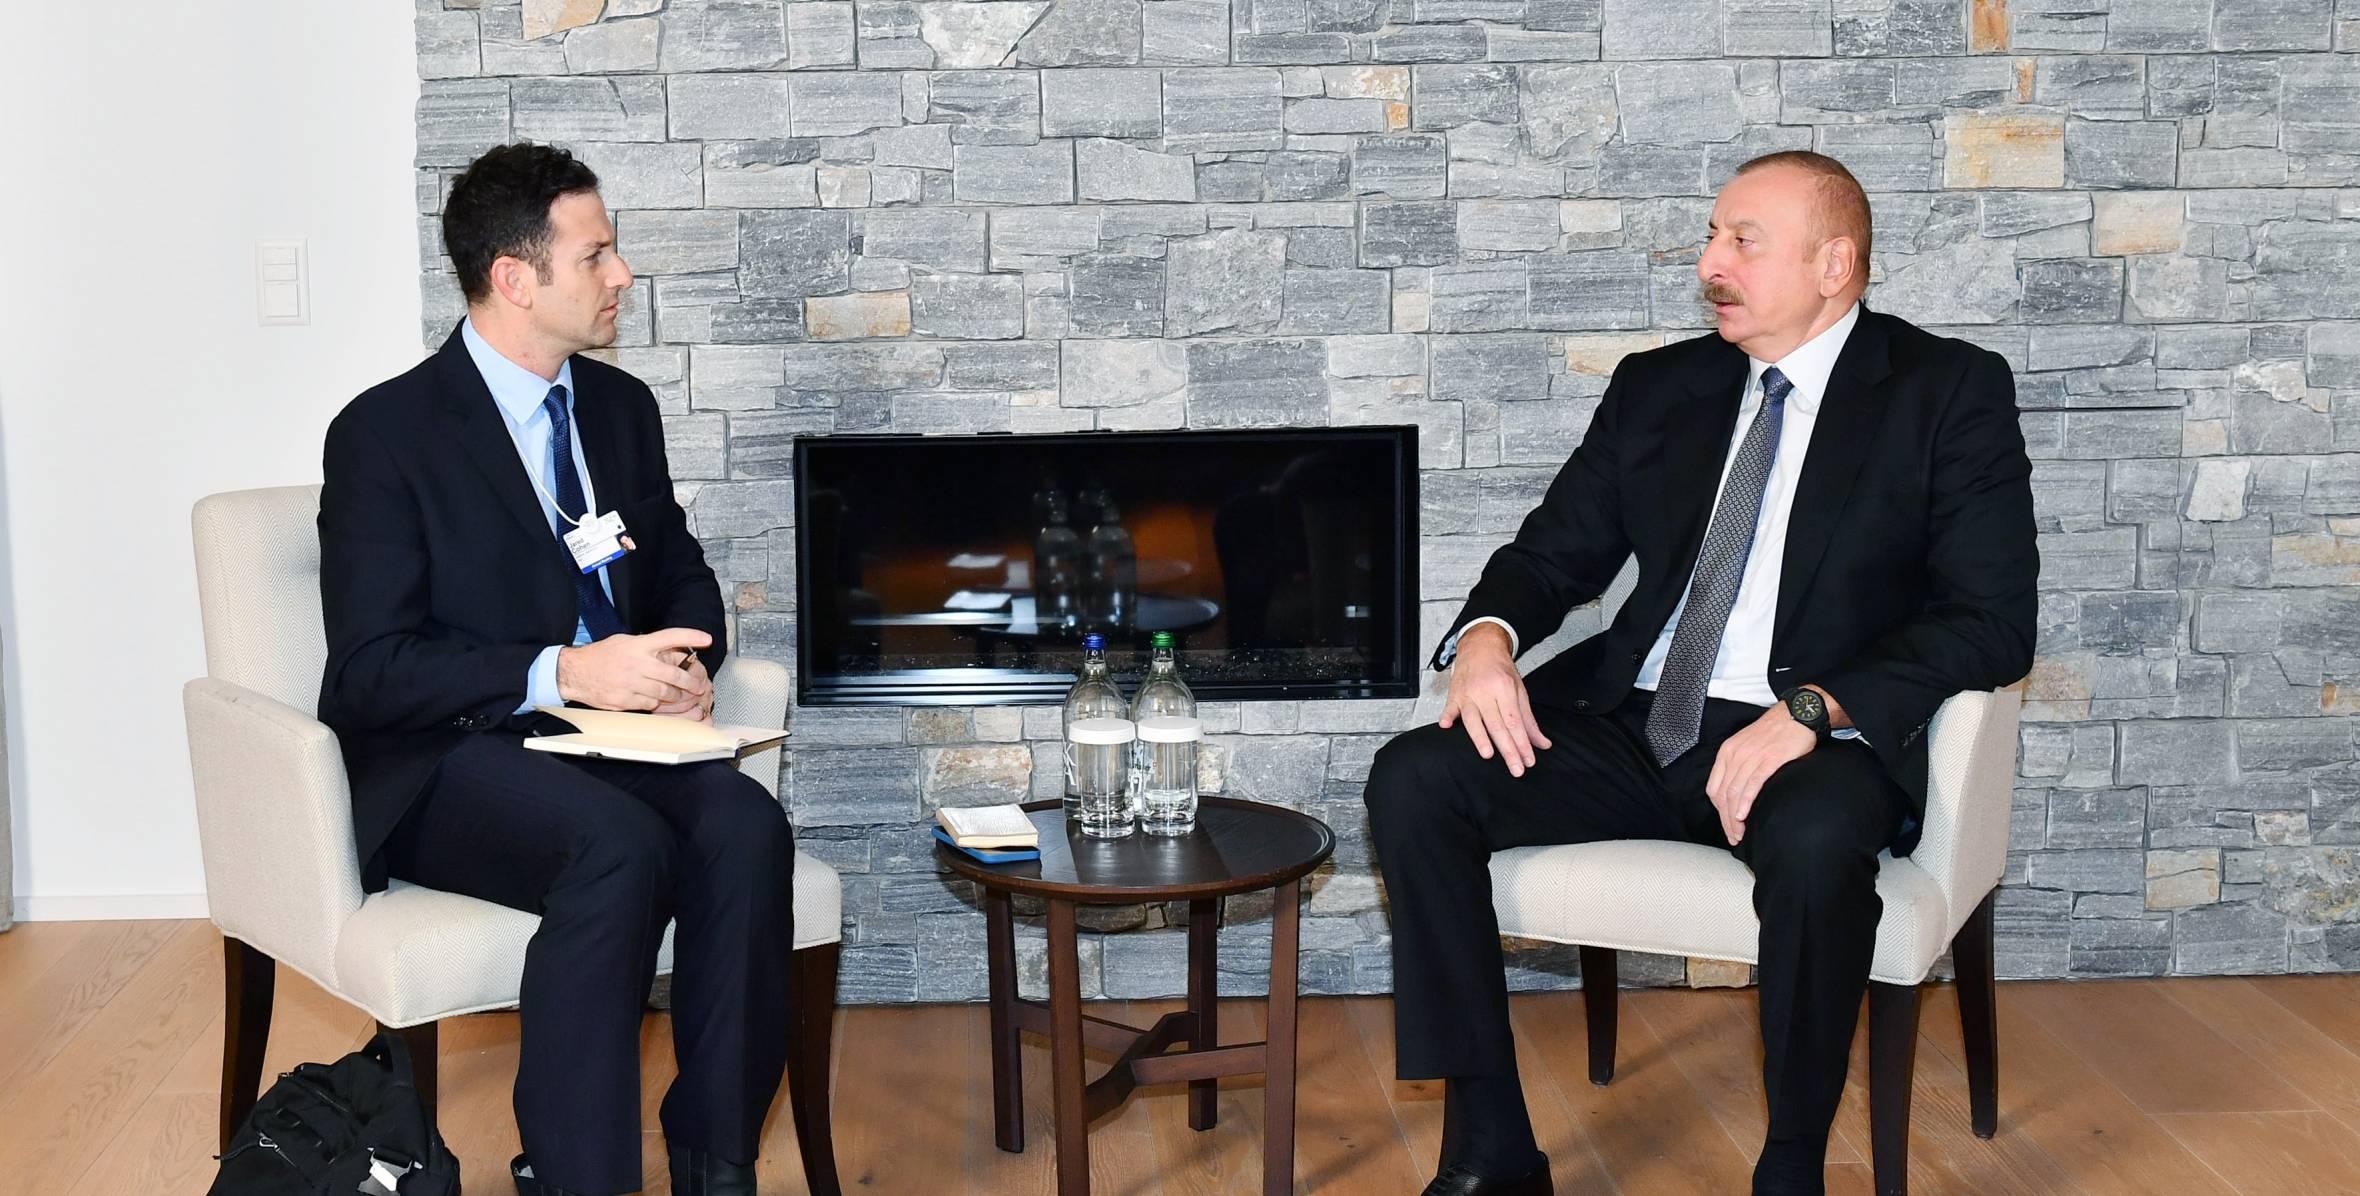 Ильхам Алиев встретился в Давосе с президентом компании The Goldman Sachs Group Inc. по глобальным вопросам